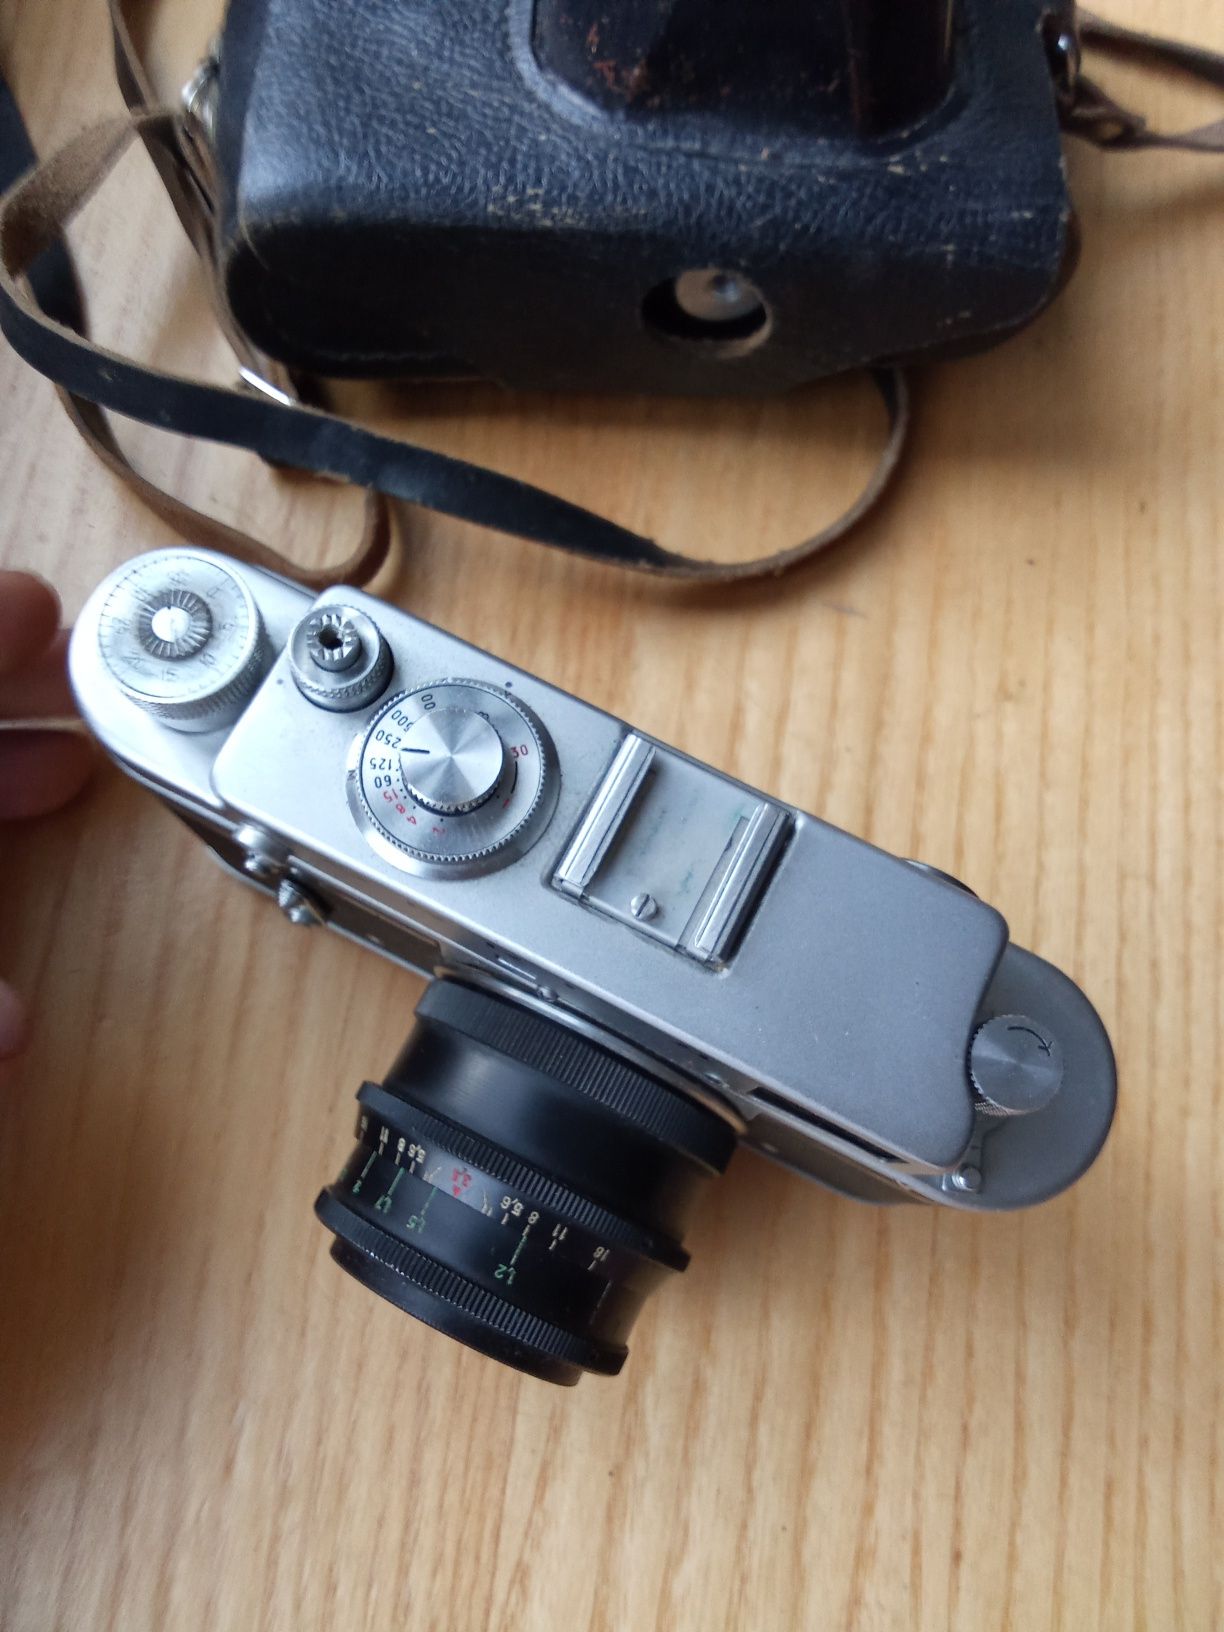 aparat fotograficzny zorki 4l zestawie z obiektywem industar 58 ZSRR